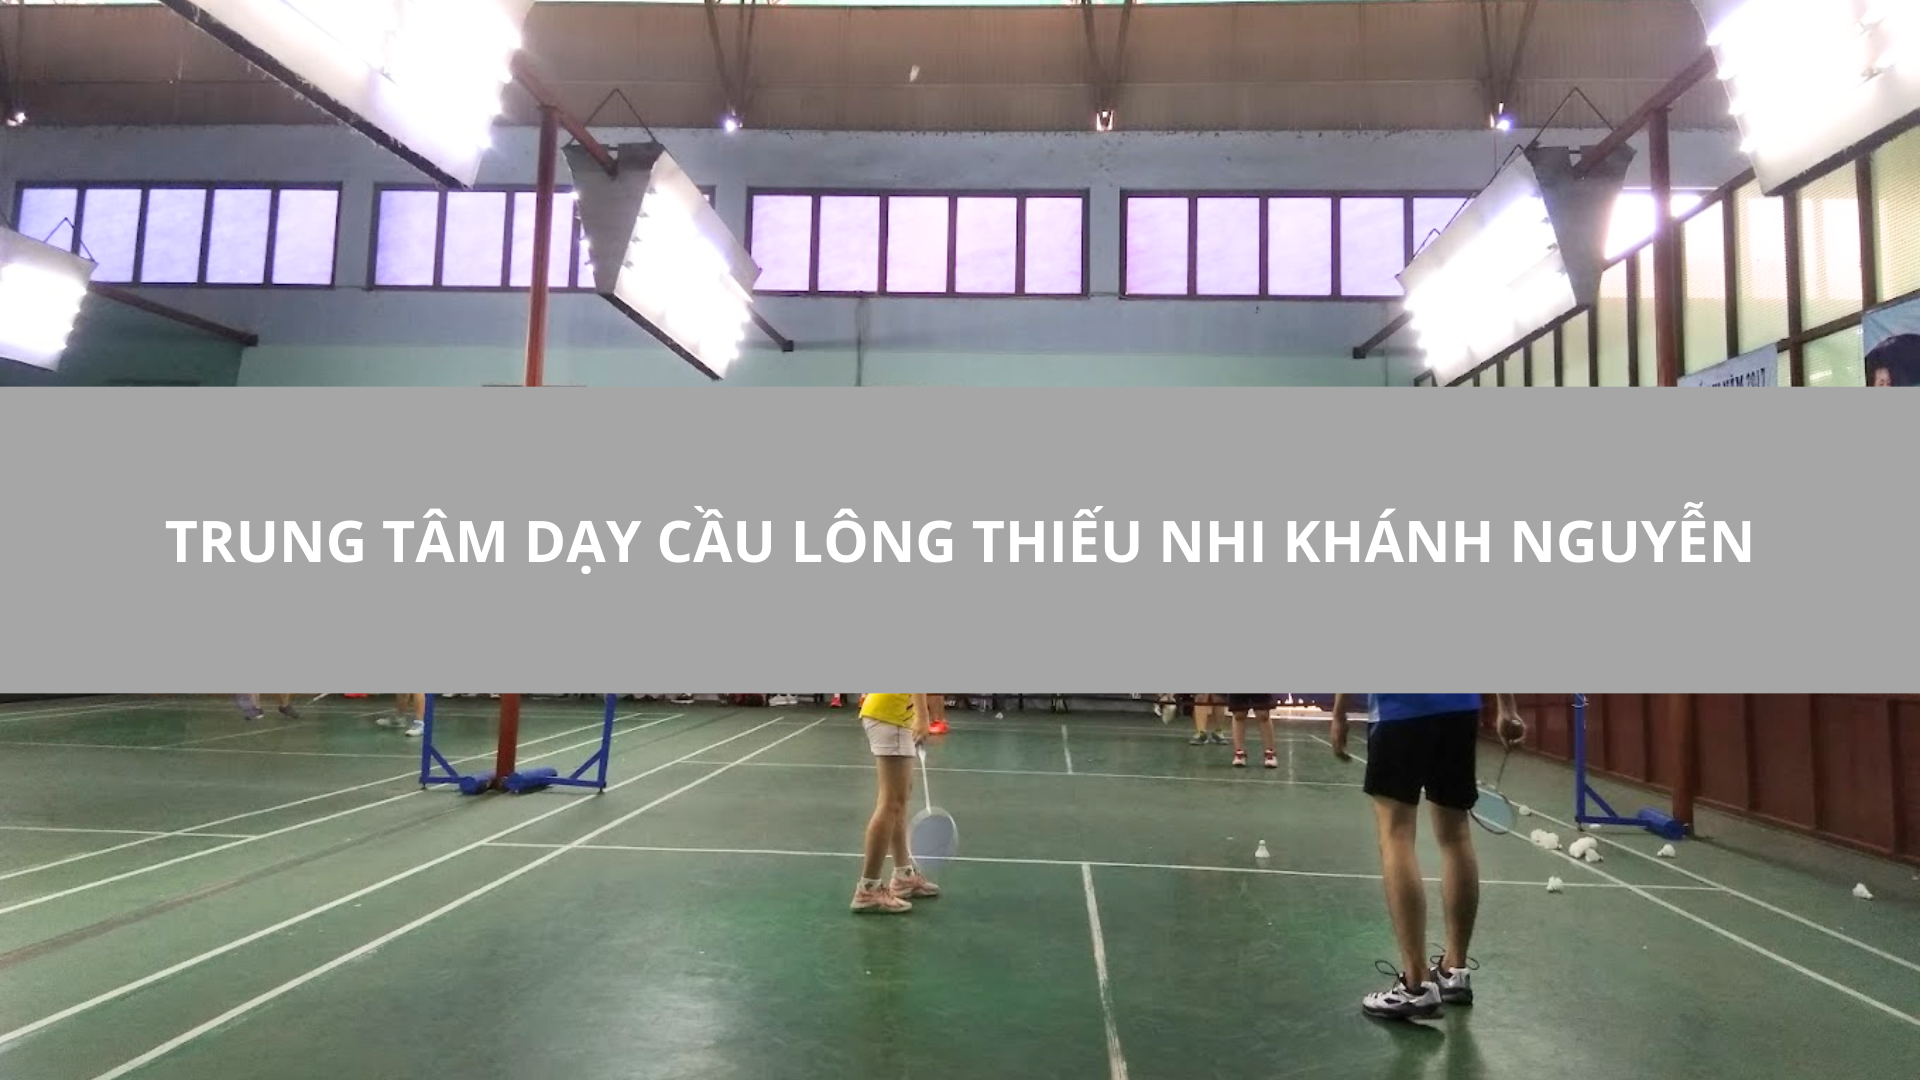 Trung tâm dạy cầu lông thiếu nhi Khánh Nguyễn, Gò Vấp, TPHCM